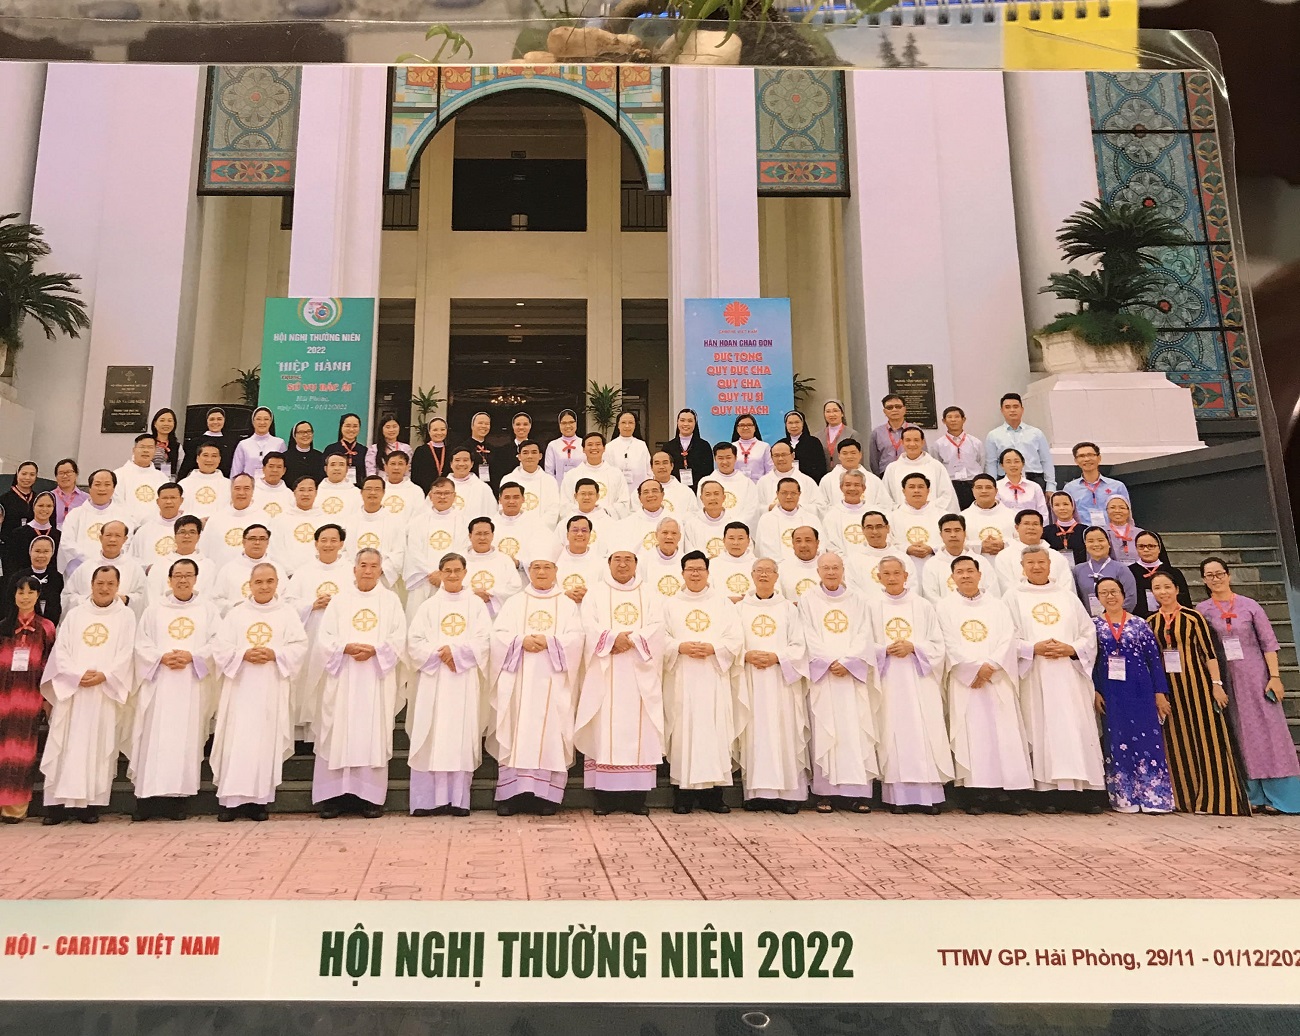 Caritas Việt Nam: Khai mạc Hội nghị Thường niên 2022